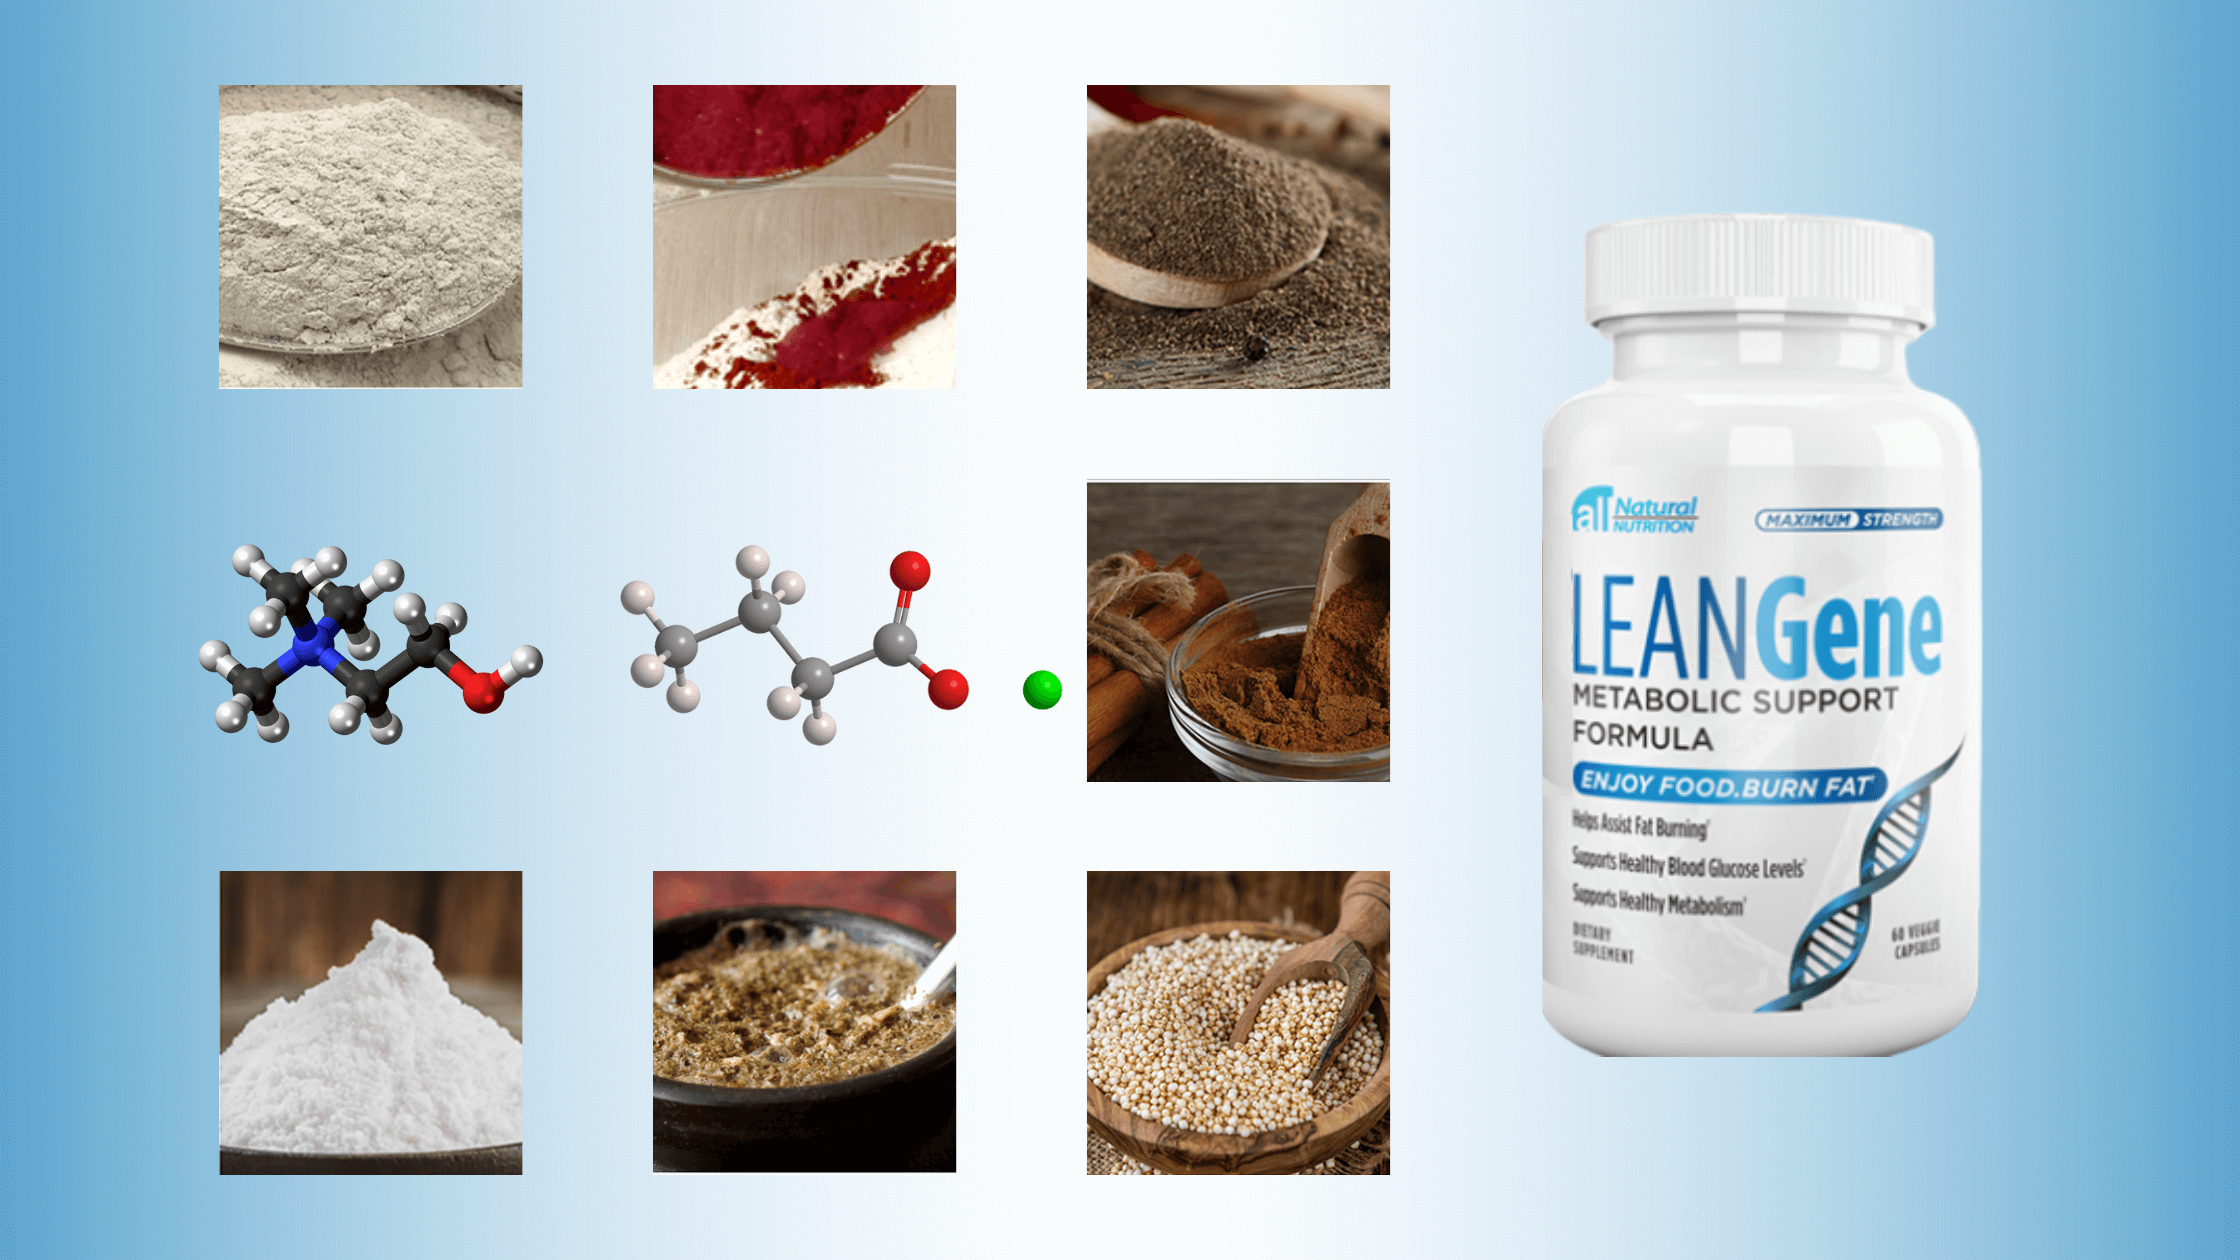 Lean Gene Ingredients